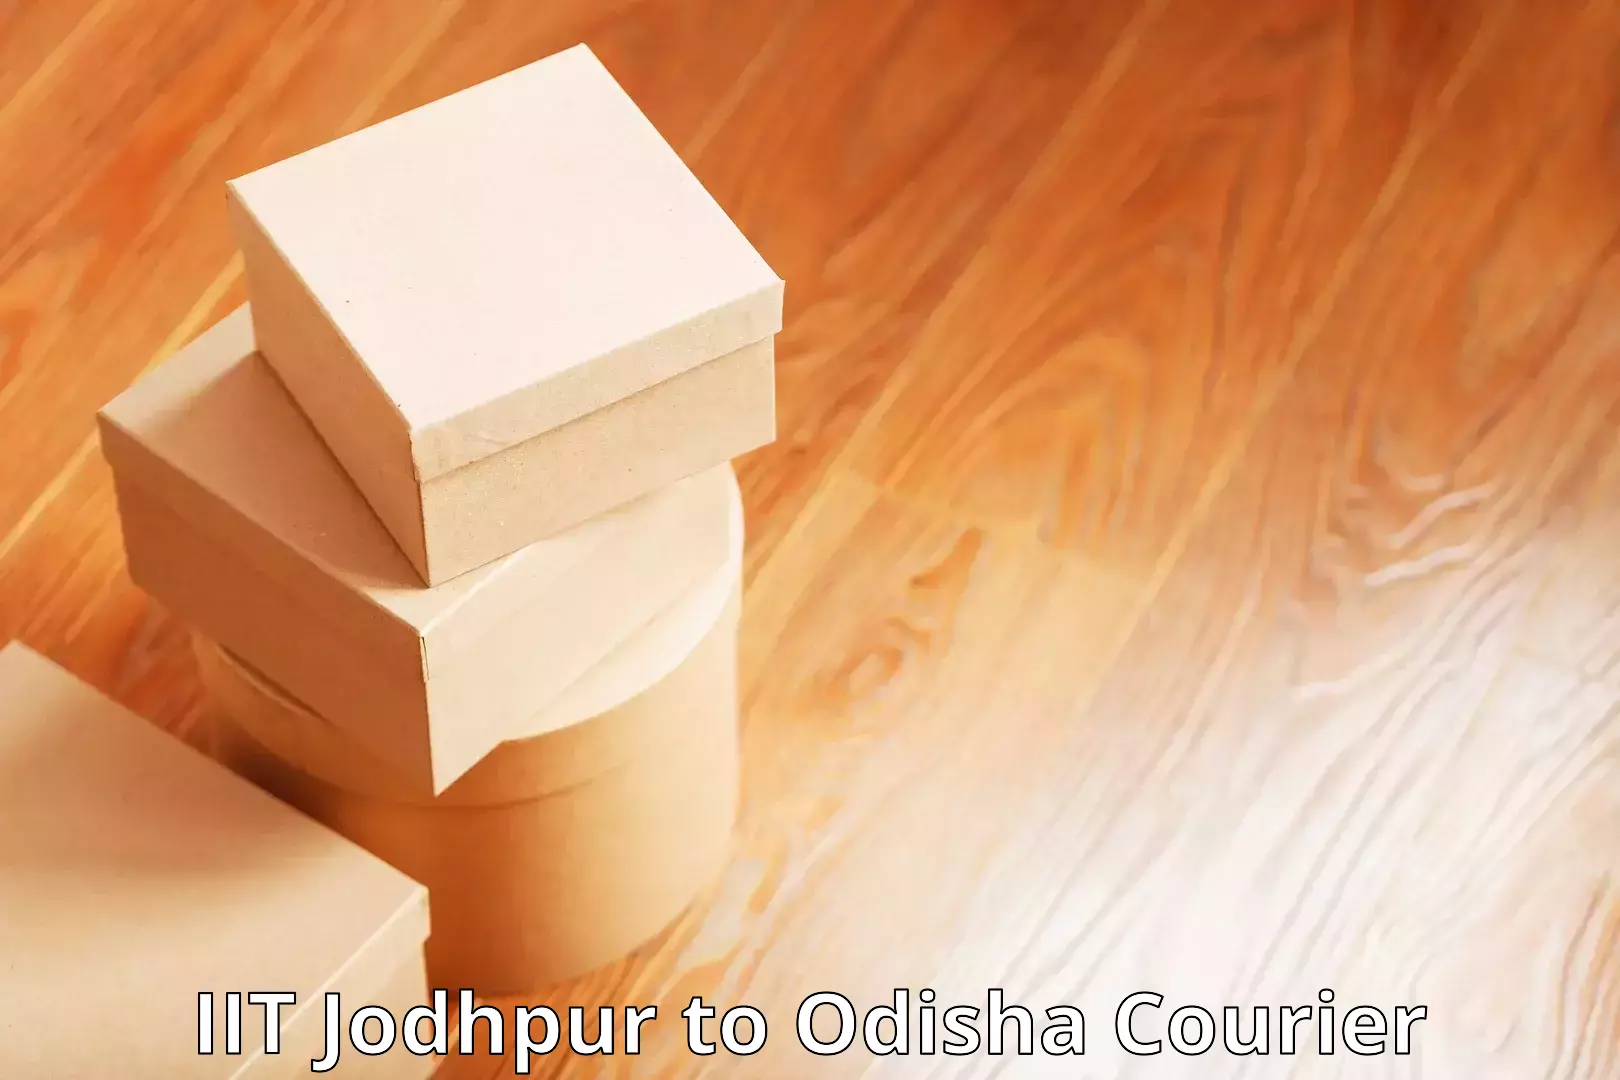 Express logistics providers IIT Jodhpur to Cuttack